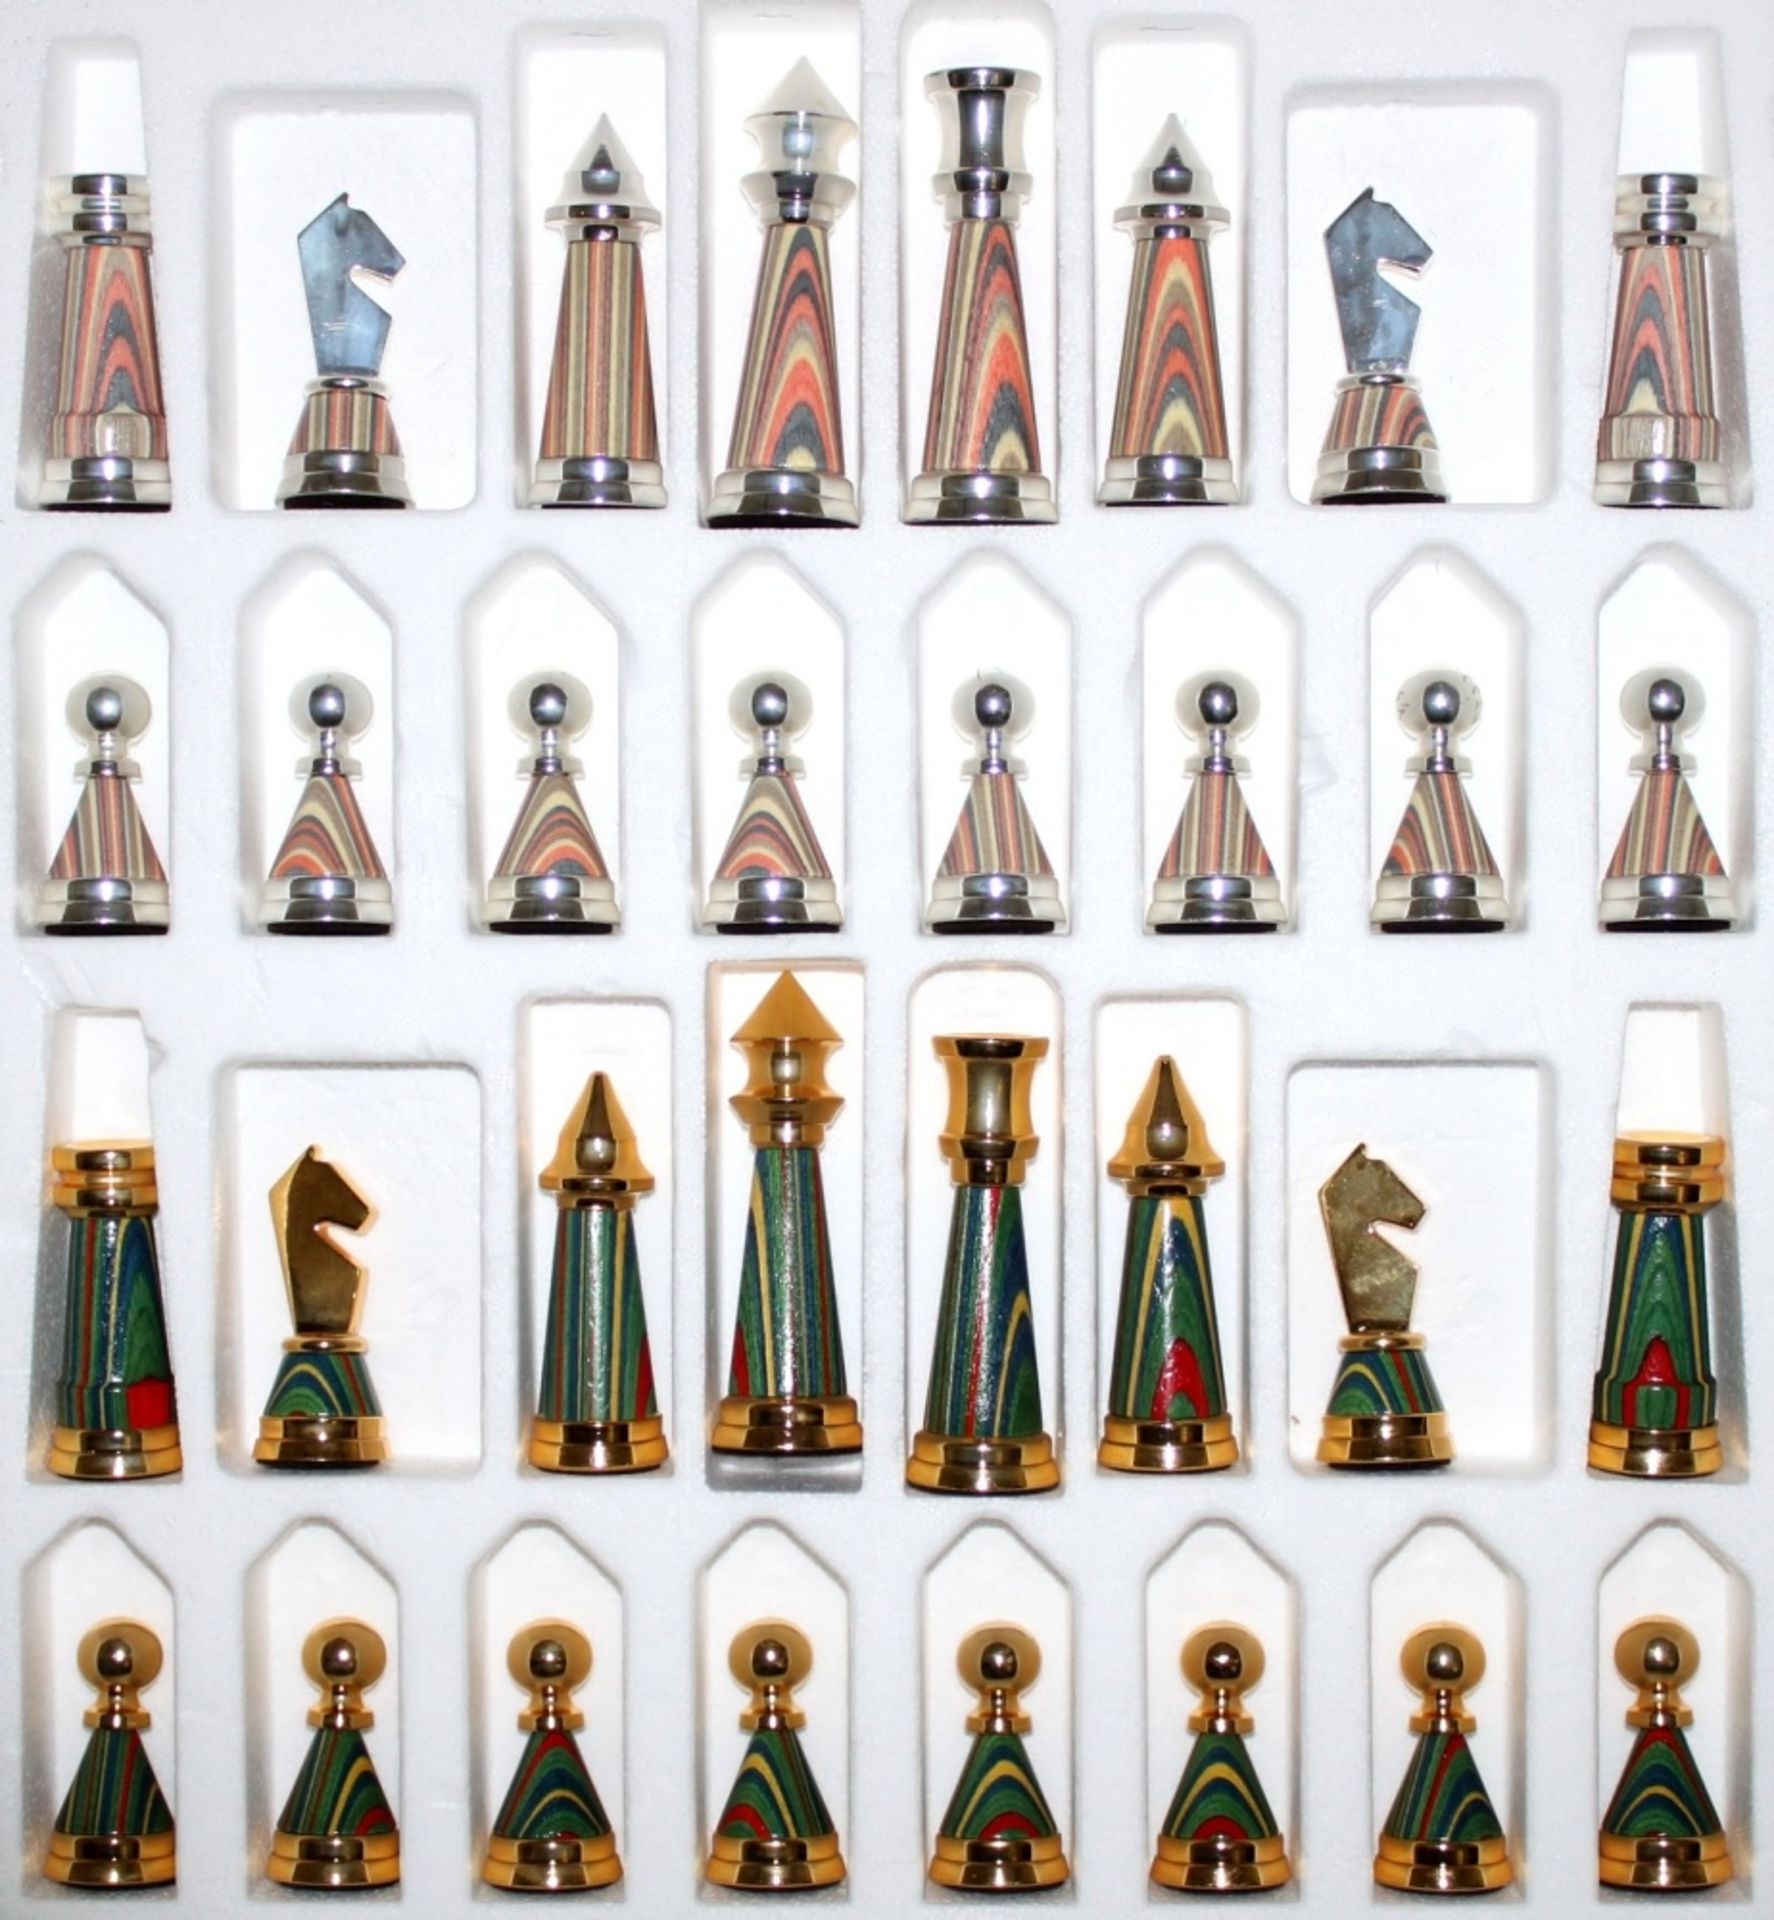 Europa. Italien. Italfama. Schachfiguren “Billardo – Type multicolor“ aus Metall und Holz